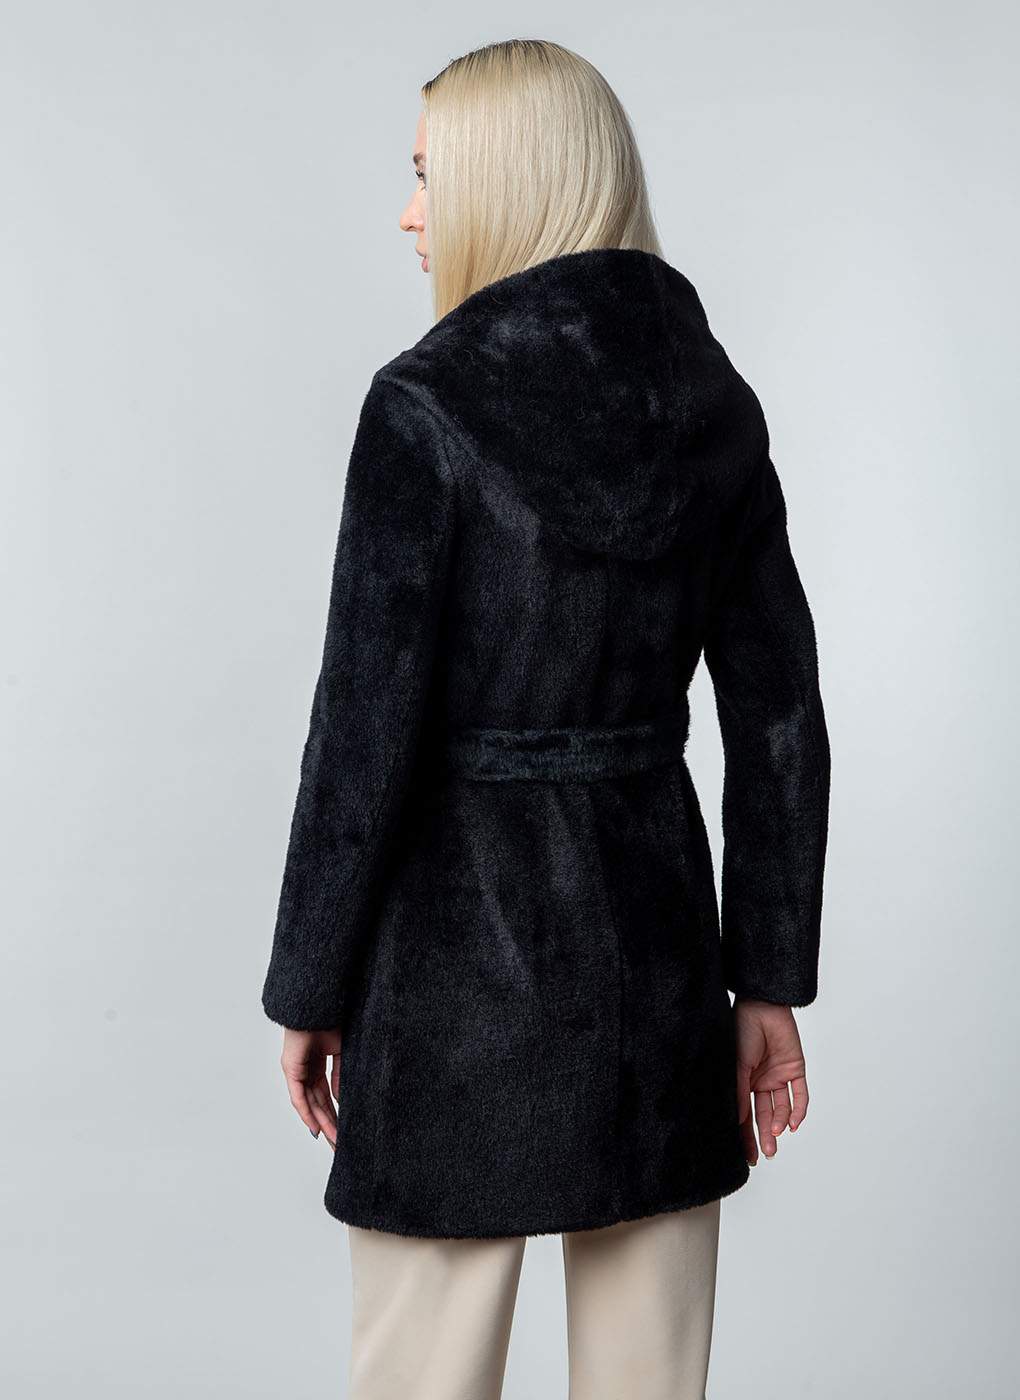 Пальто женское Sezalto 57572 черное 42 RU